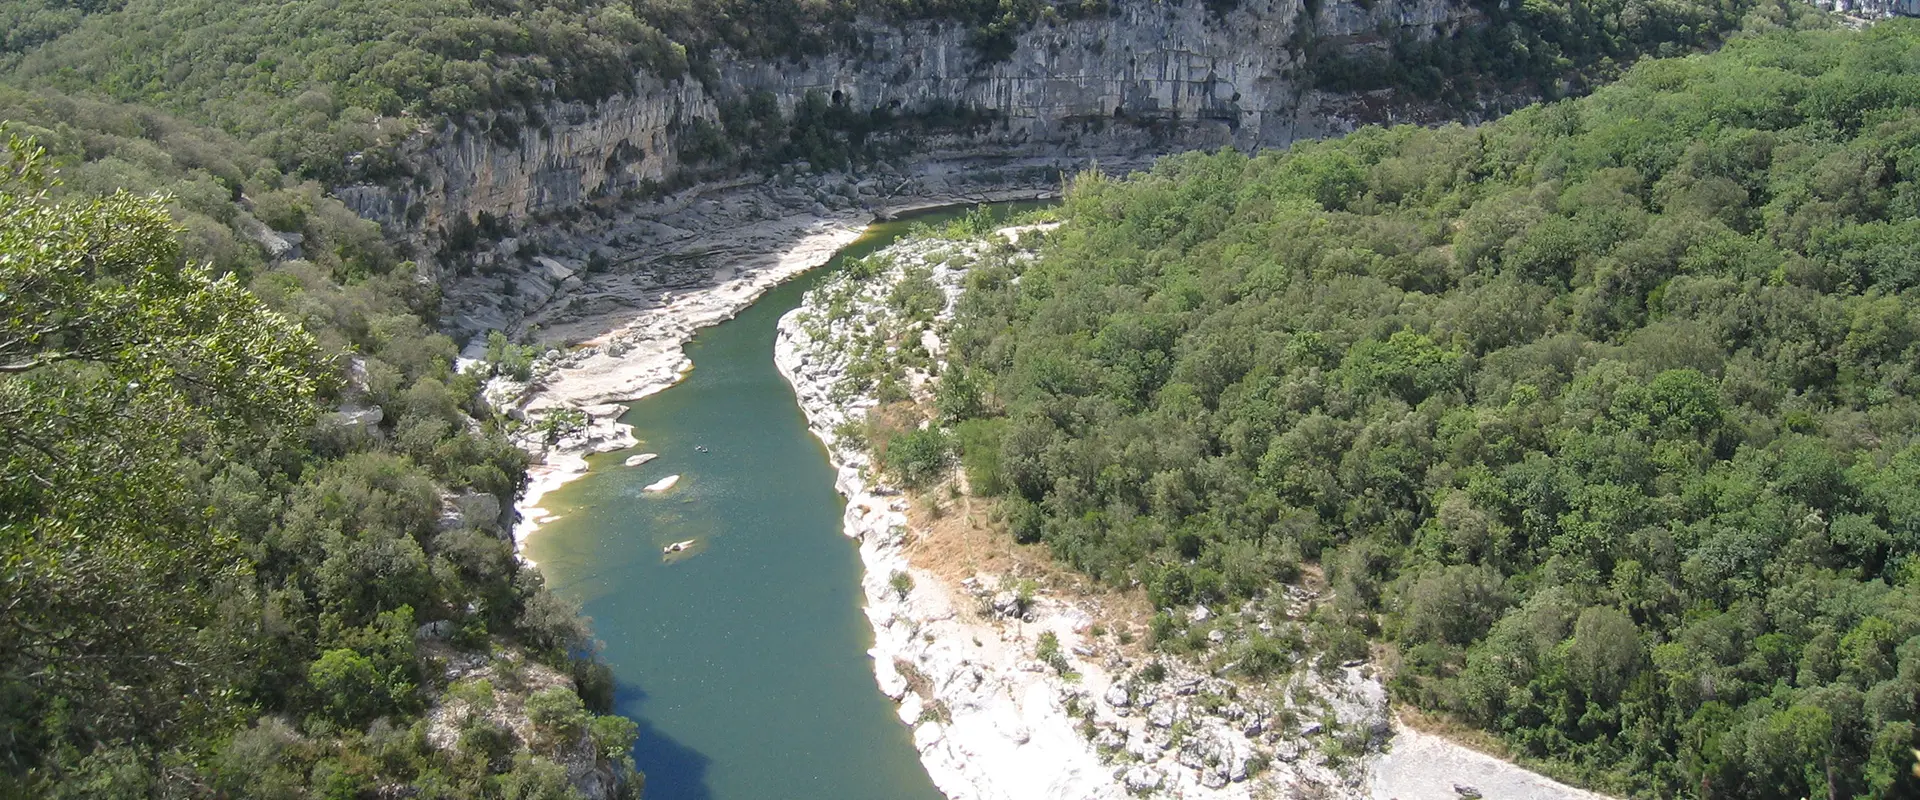 Les gorges de l’Ardèche, Ardèche